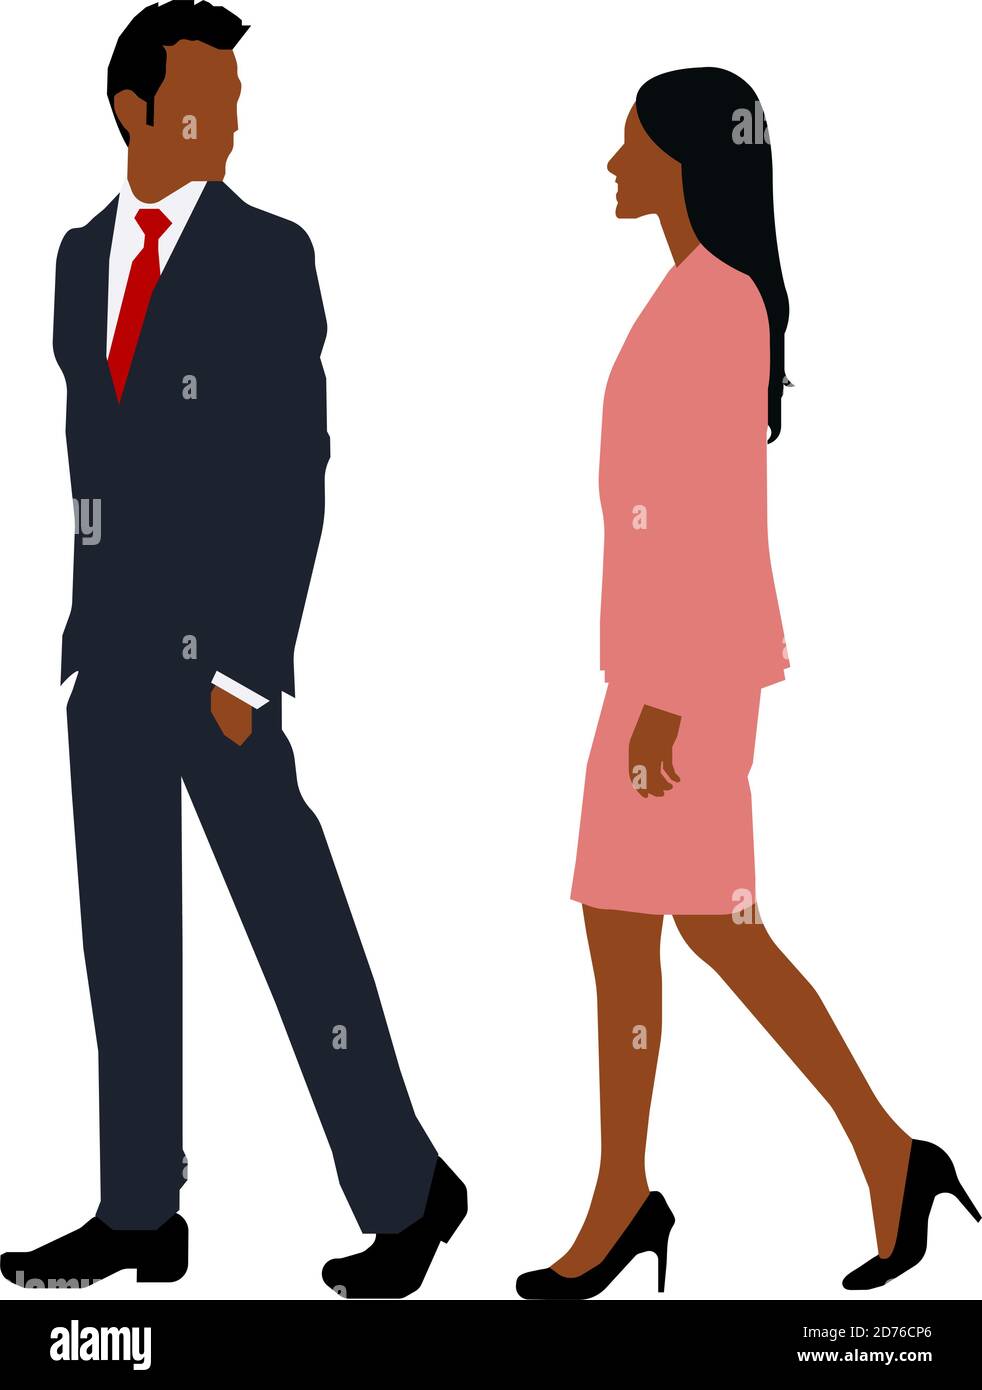 Schwarze Menschen (tägliches gemeinsames Leben) Silhouette Vektor Illustration / Business Person Stock Vektor